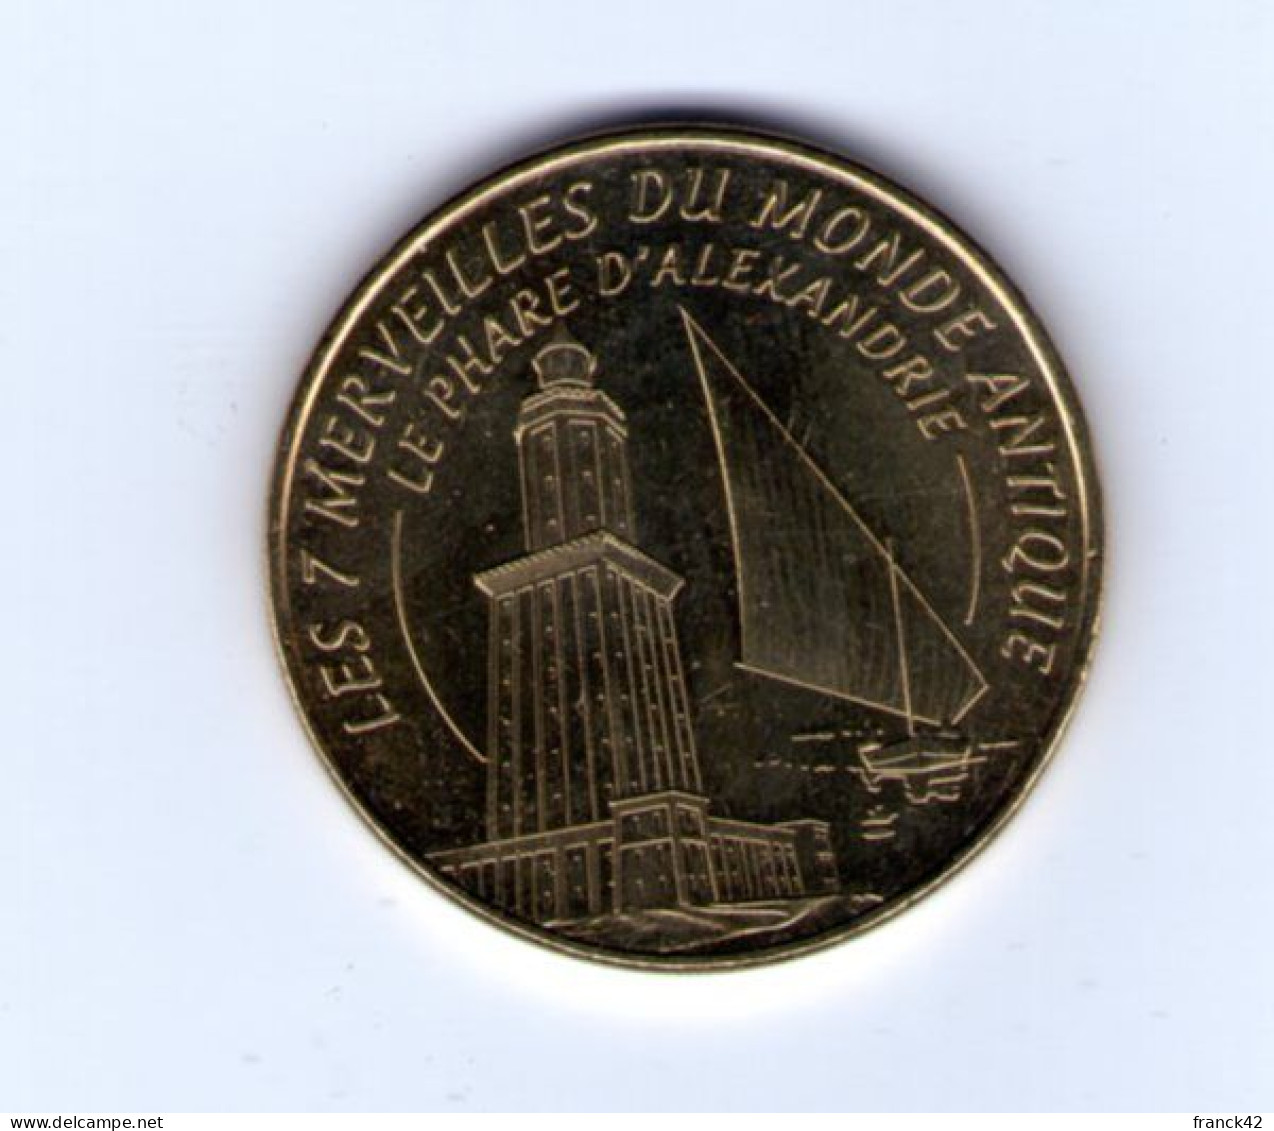 Monnaie De Paris. Les 7 Merveilles Du Monde. Le Phare D'alexandrie. 2014 - 2014